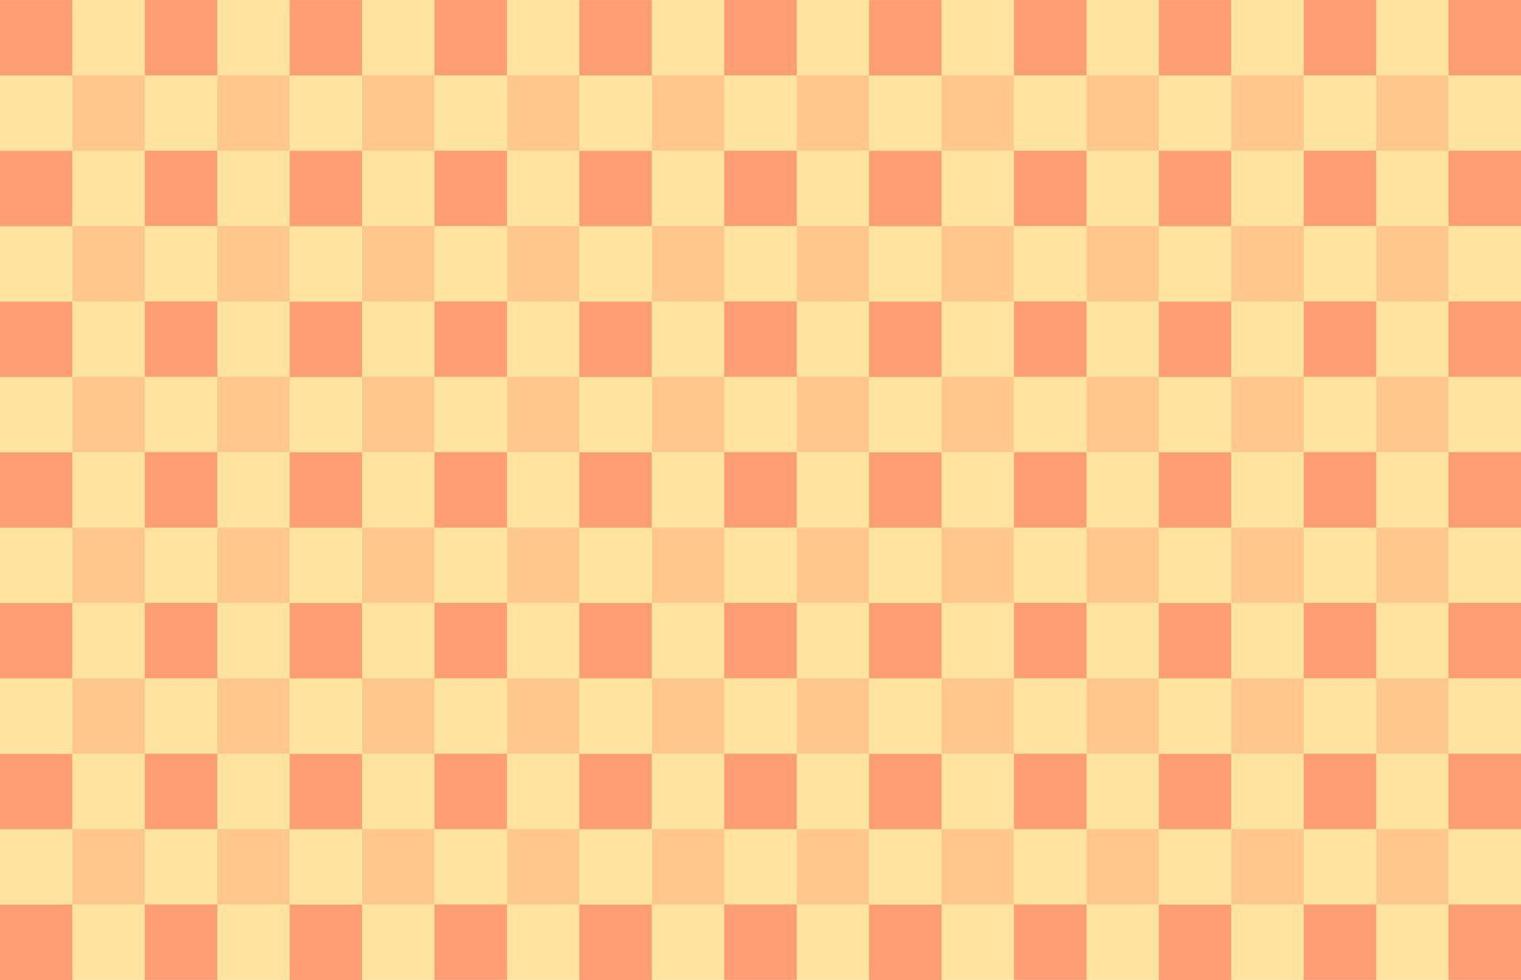 patrón de colores de fondo a cuadros naranja compuesto de múltiples colores. fondo cuadrado de ajedrez abstracto en colores pastel. ilustración vectorial vector